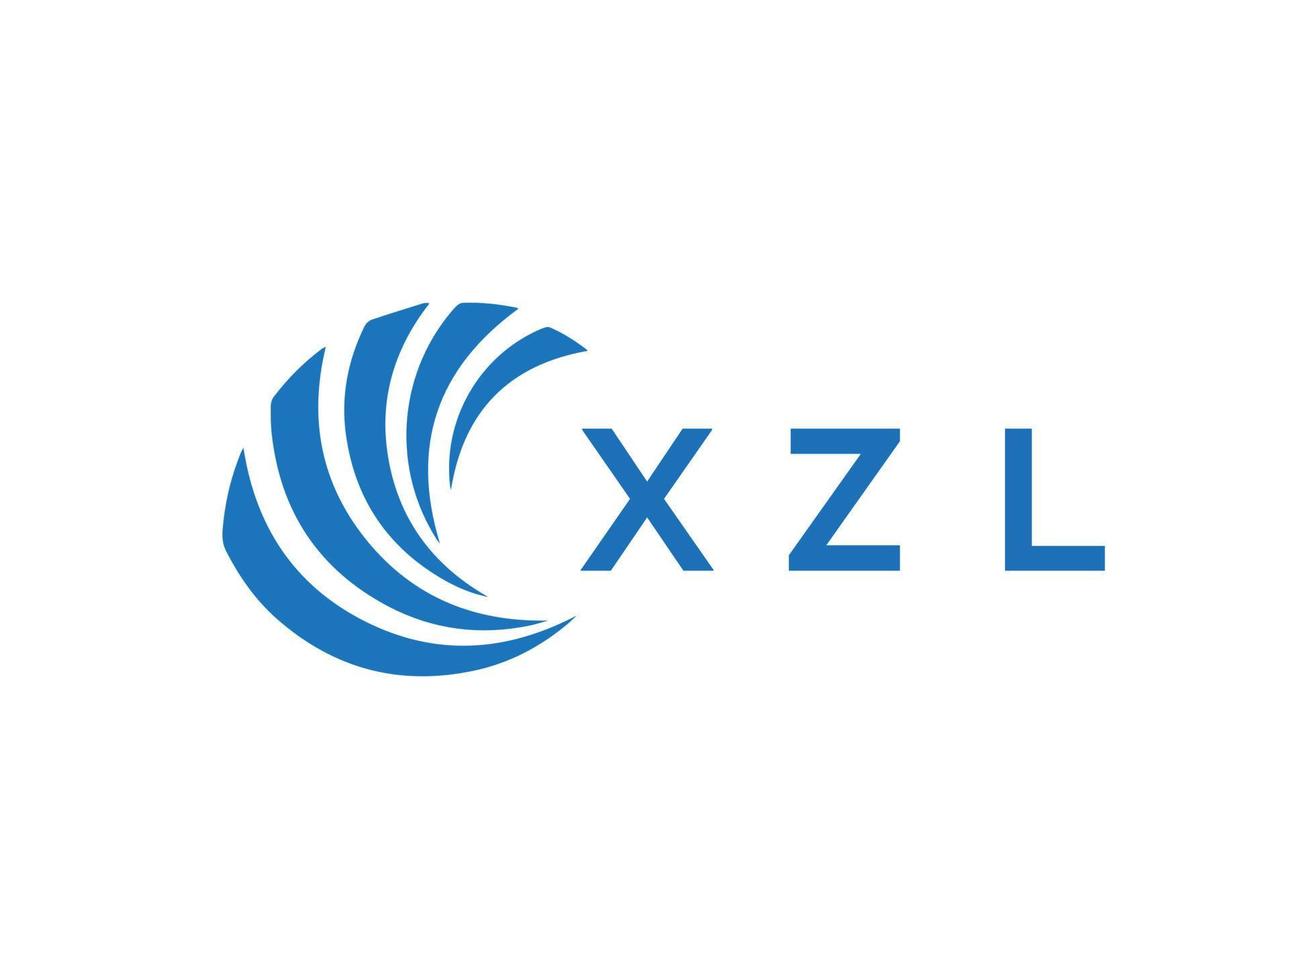 XZL letter logo design on white background. XZL creative circle letter logo concept. XZL letter design. vector